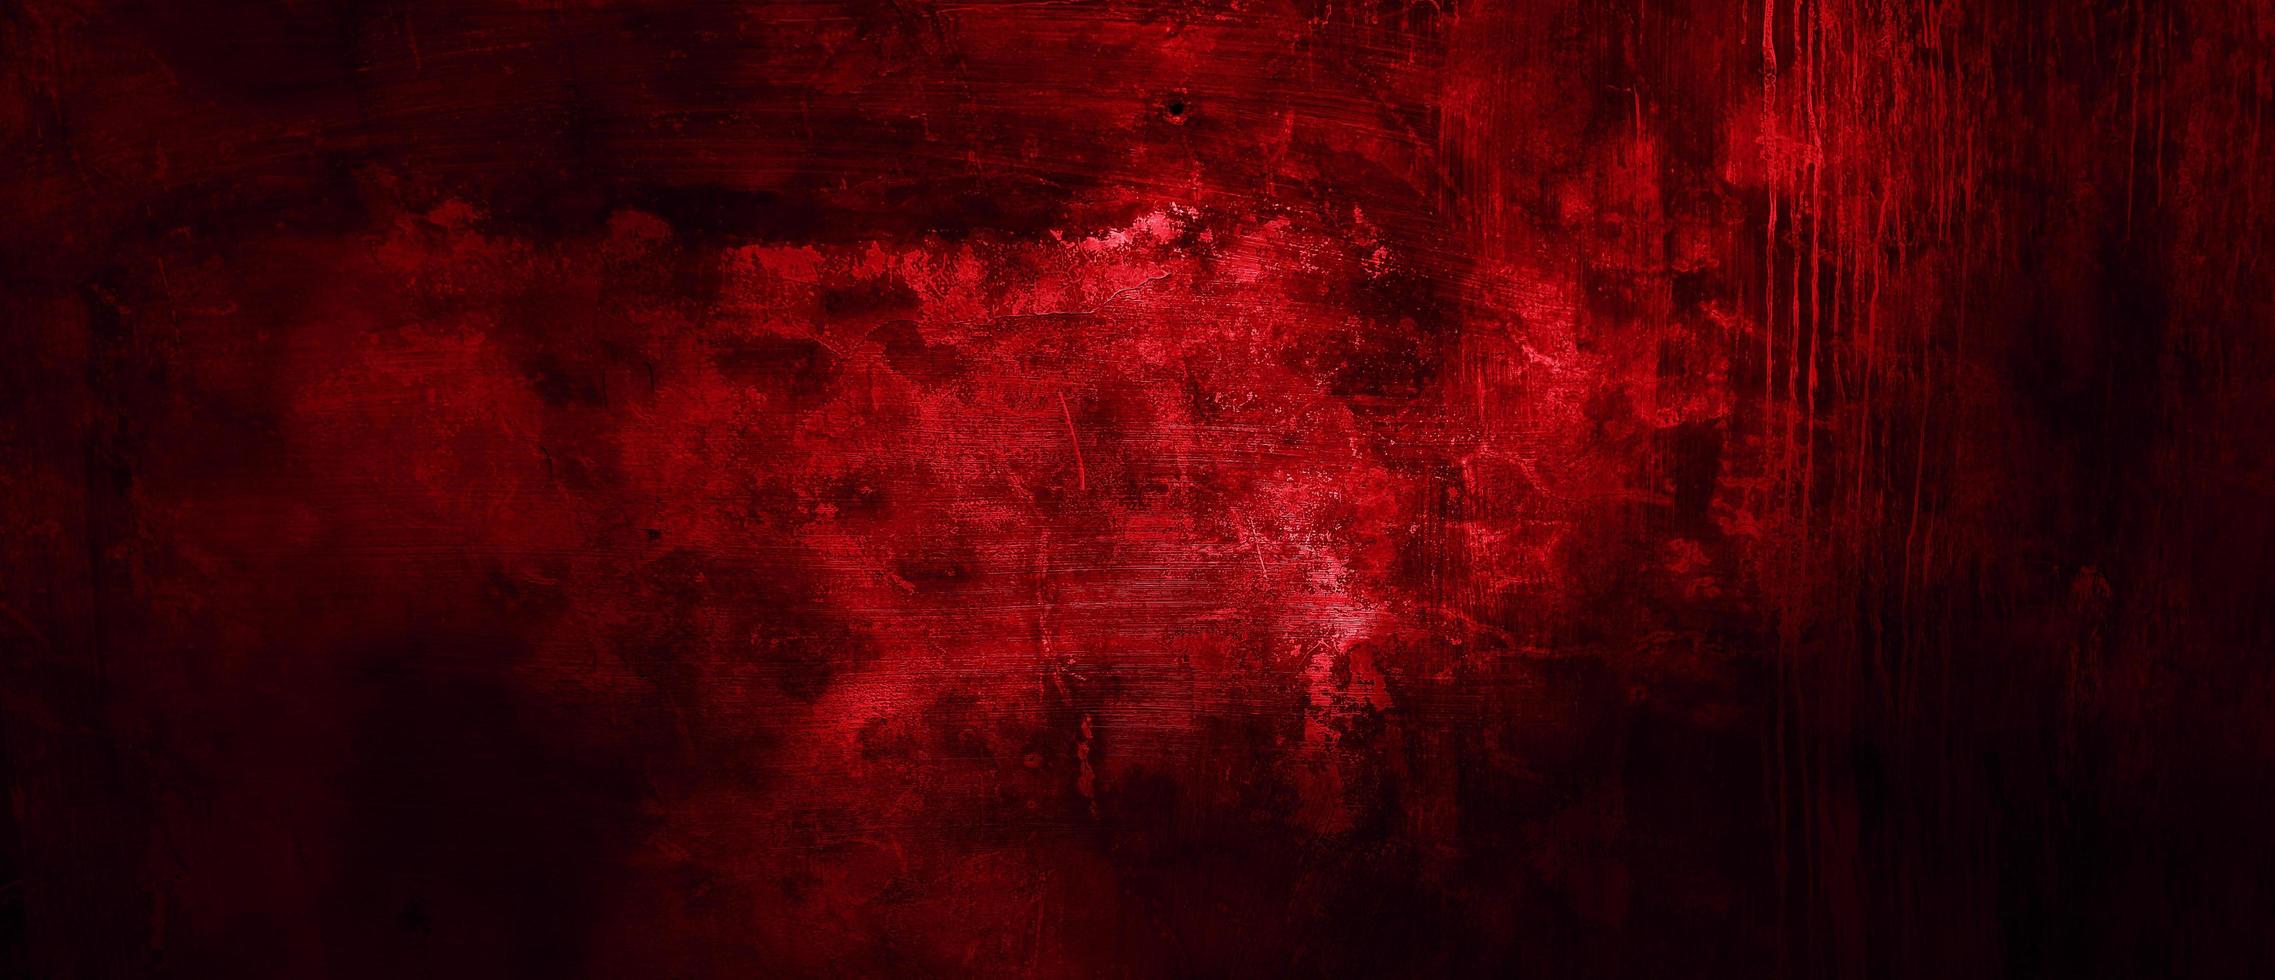 fundo de terror vermelho e preto assustador. concreto grunge vermelho escuro foto